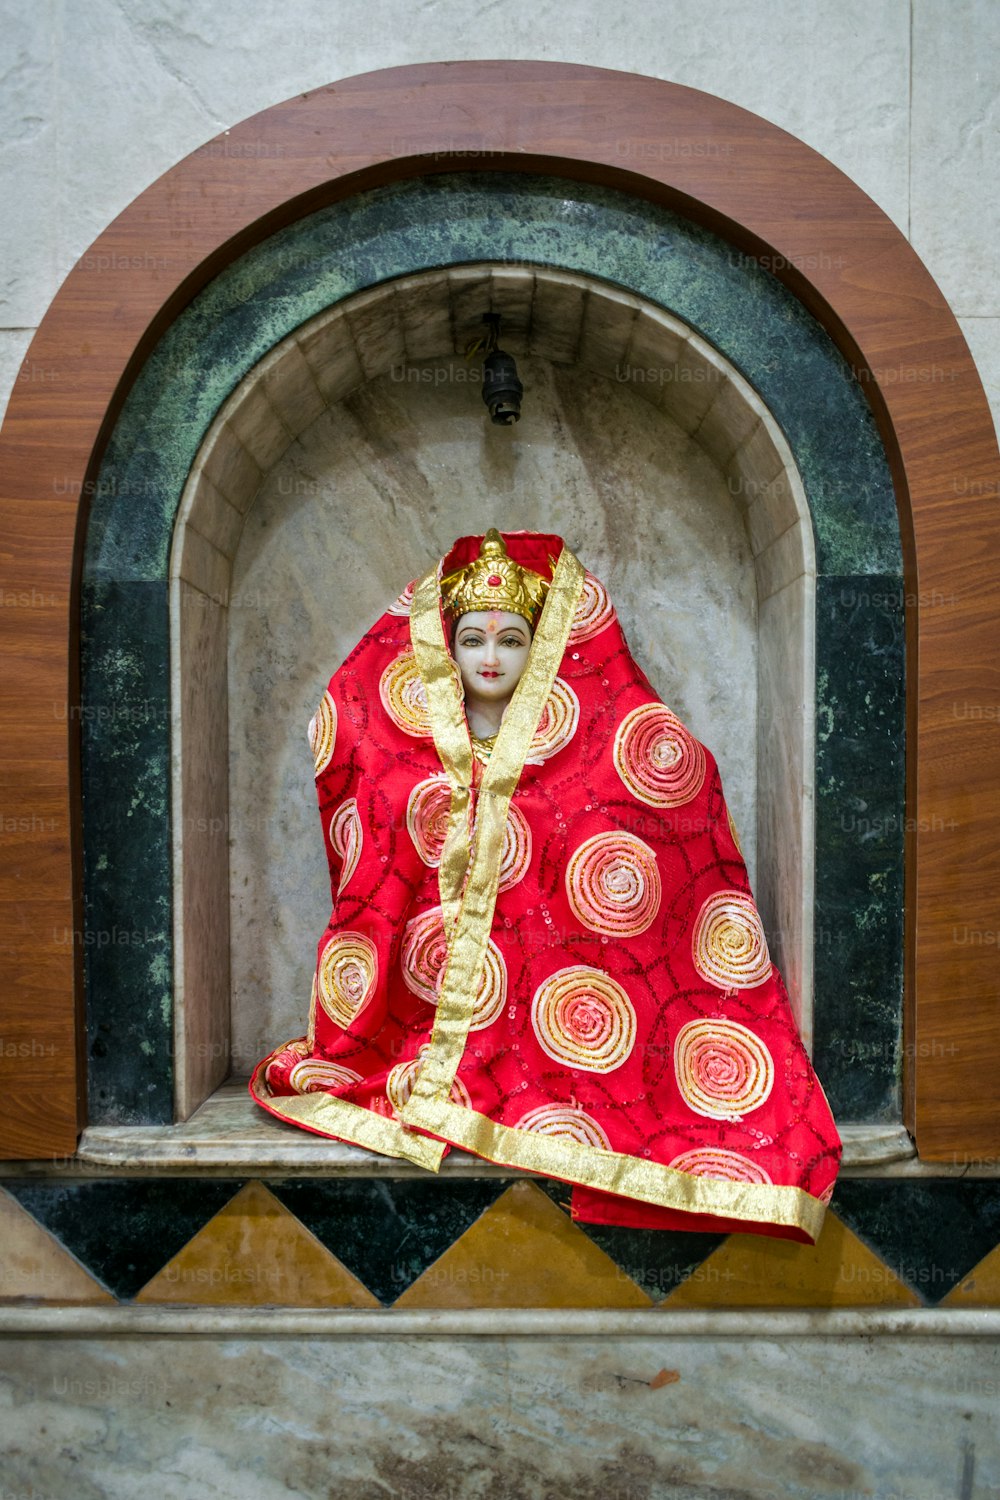 赤と金の衣装を着た女性の像